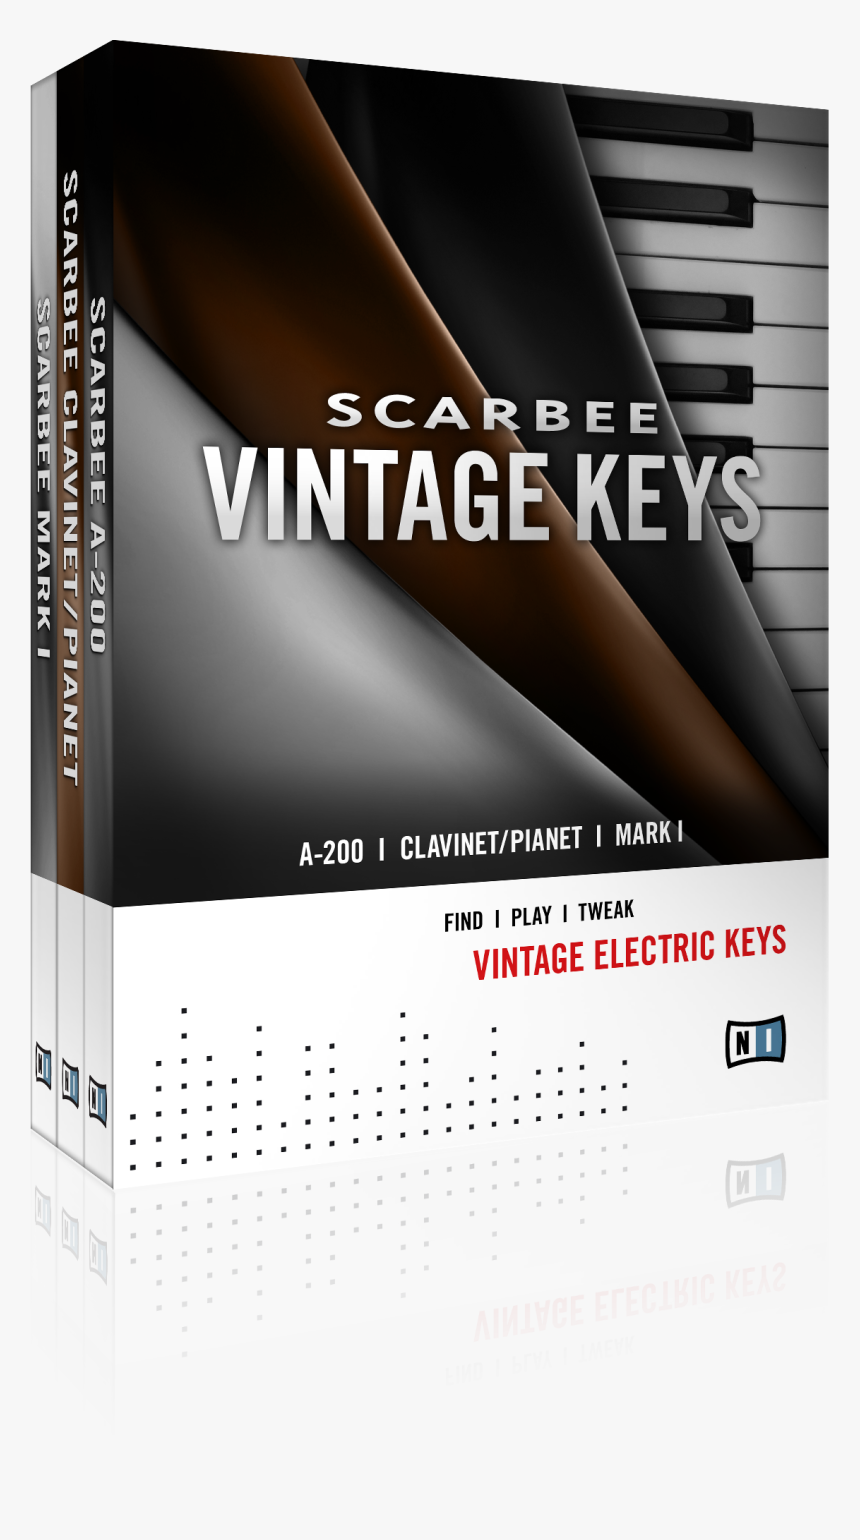 Scarbee Vintage Keys, HD Png Download, Free Download